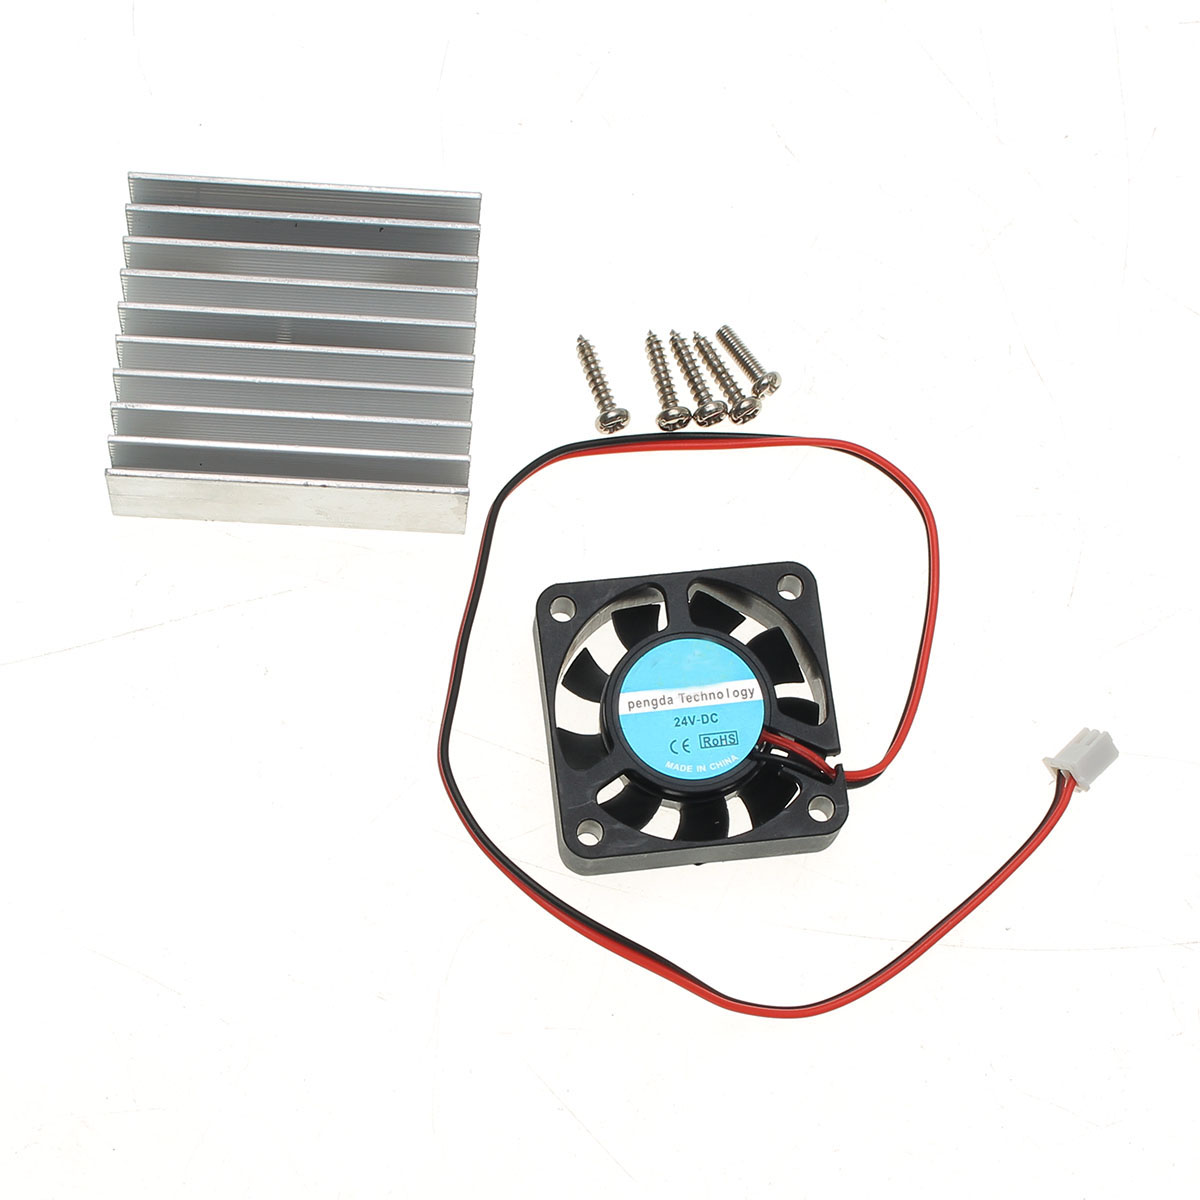 

3pcs Original Hiland Heat Sink + Cooling Fan + Mounting Screws Kit For 0-30V 0-28V Universal Power Supply